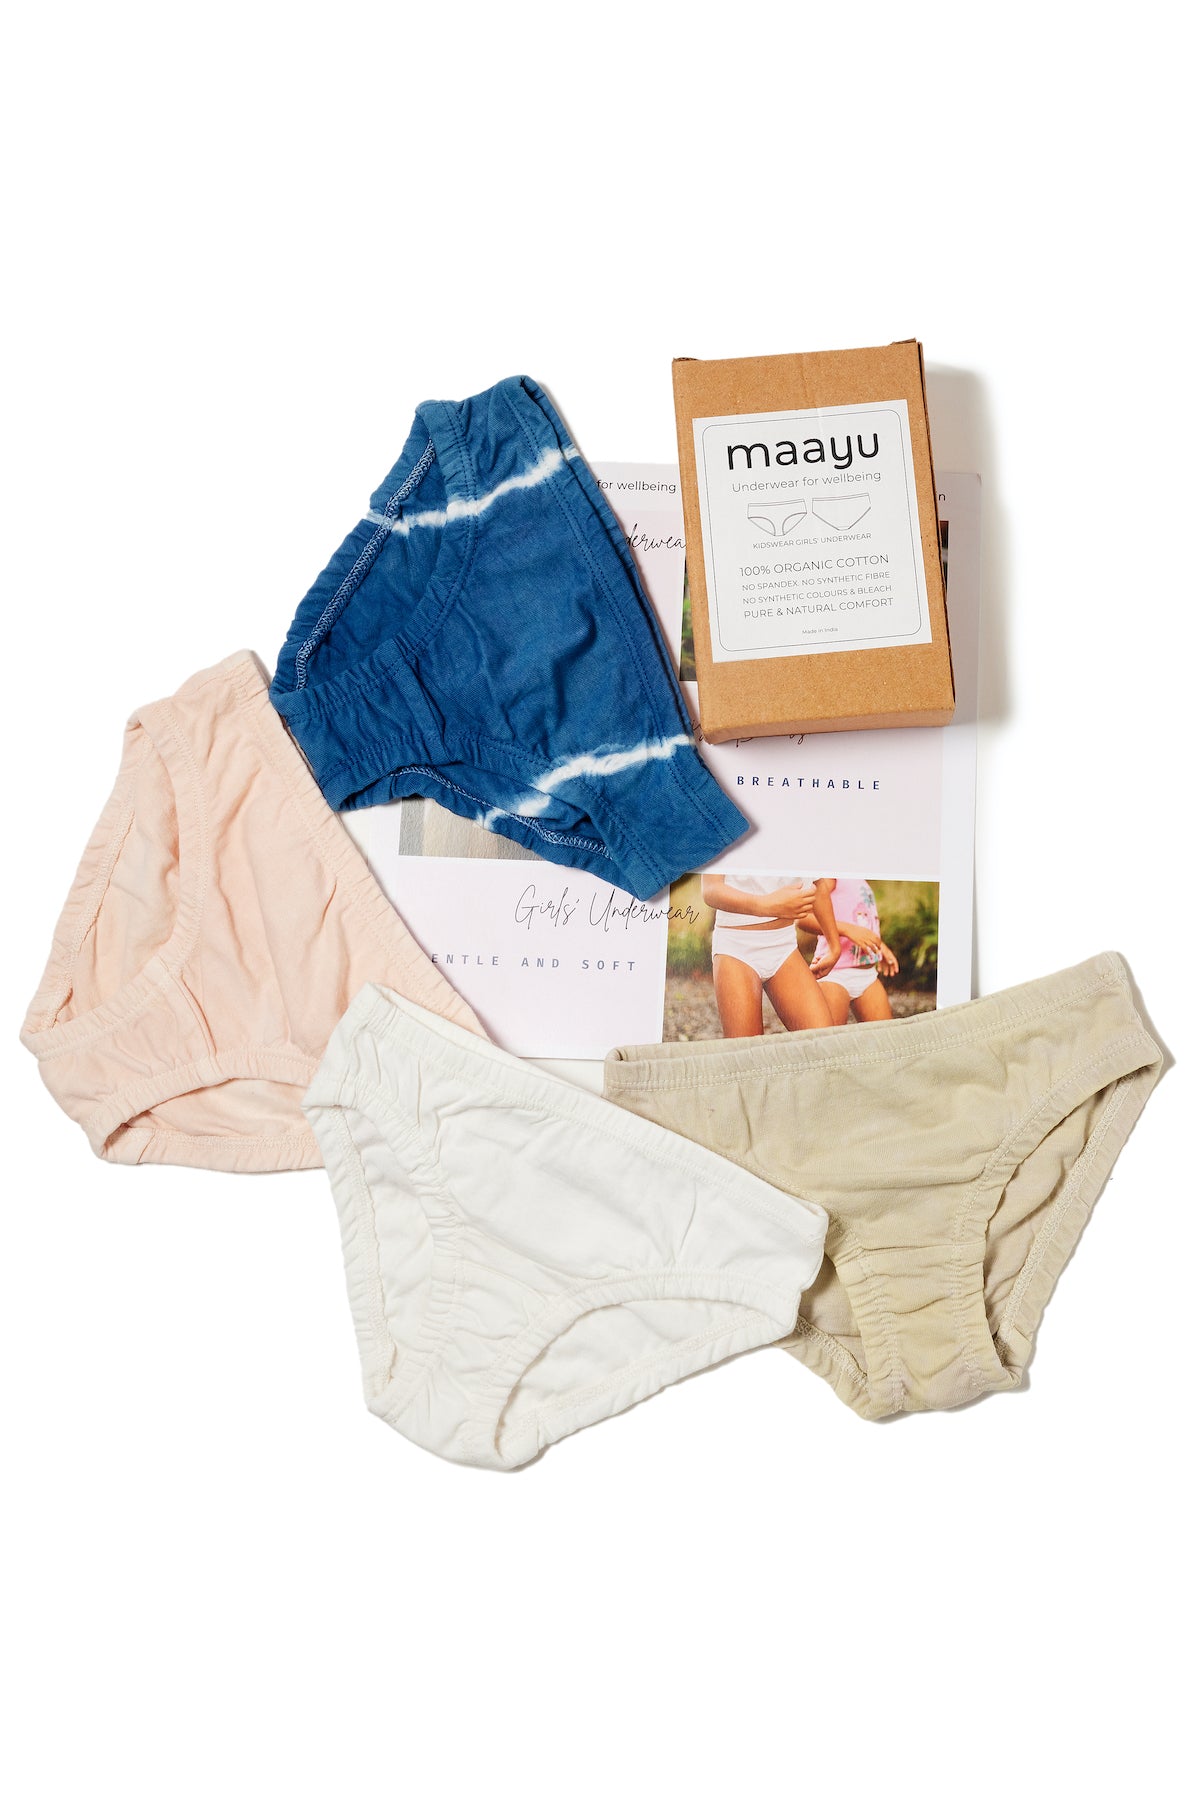  Girls Underwear 100% Cotton Underwear For Girls Breathable  Toddler Girl Underwear Comfort Baby Girls Panties 6 Packs